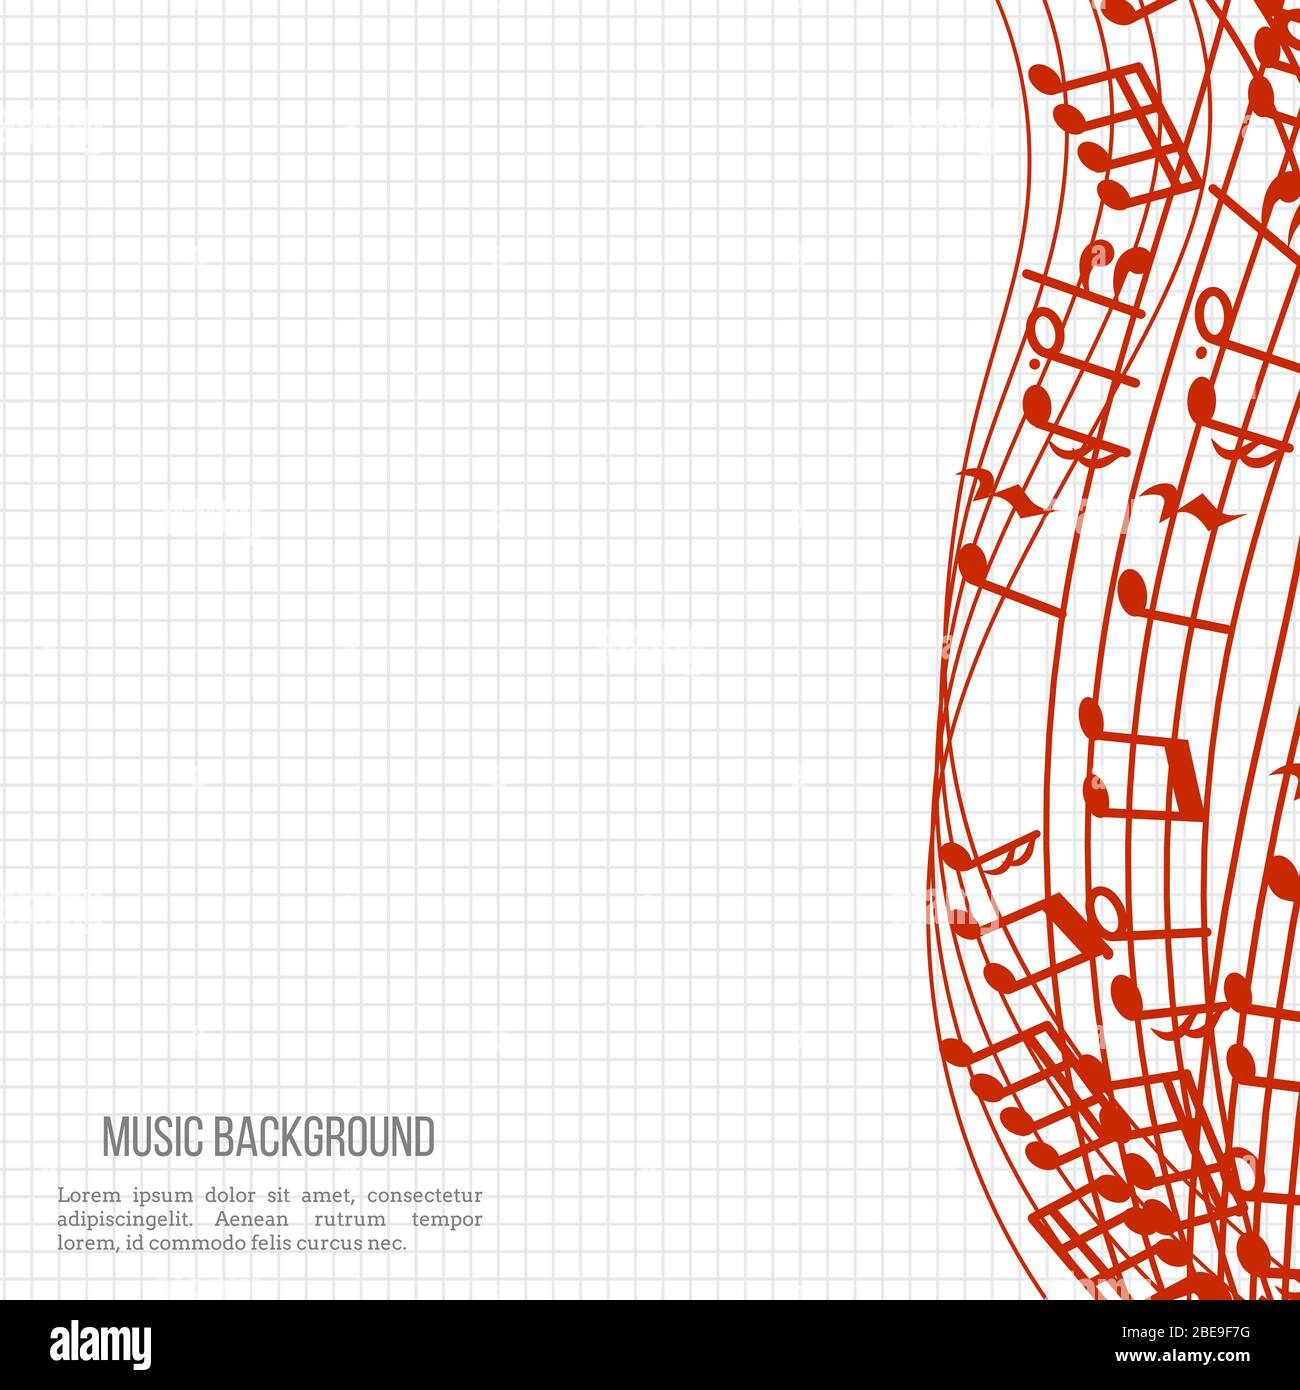 Notebook-Musikhintergrund mit roten Noten und Wellen. Vektorgrafik Stock Vektor